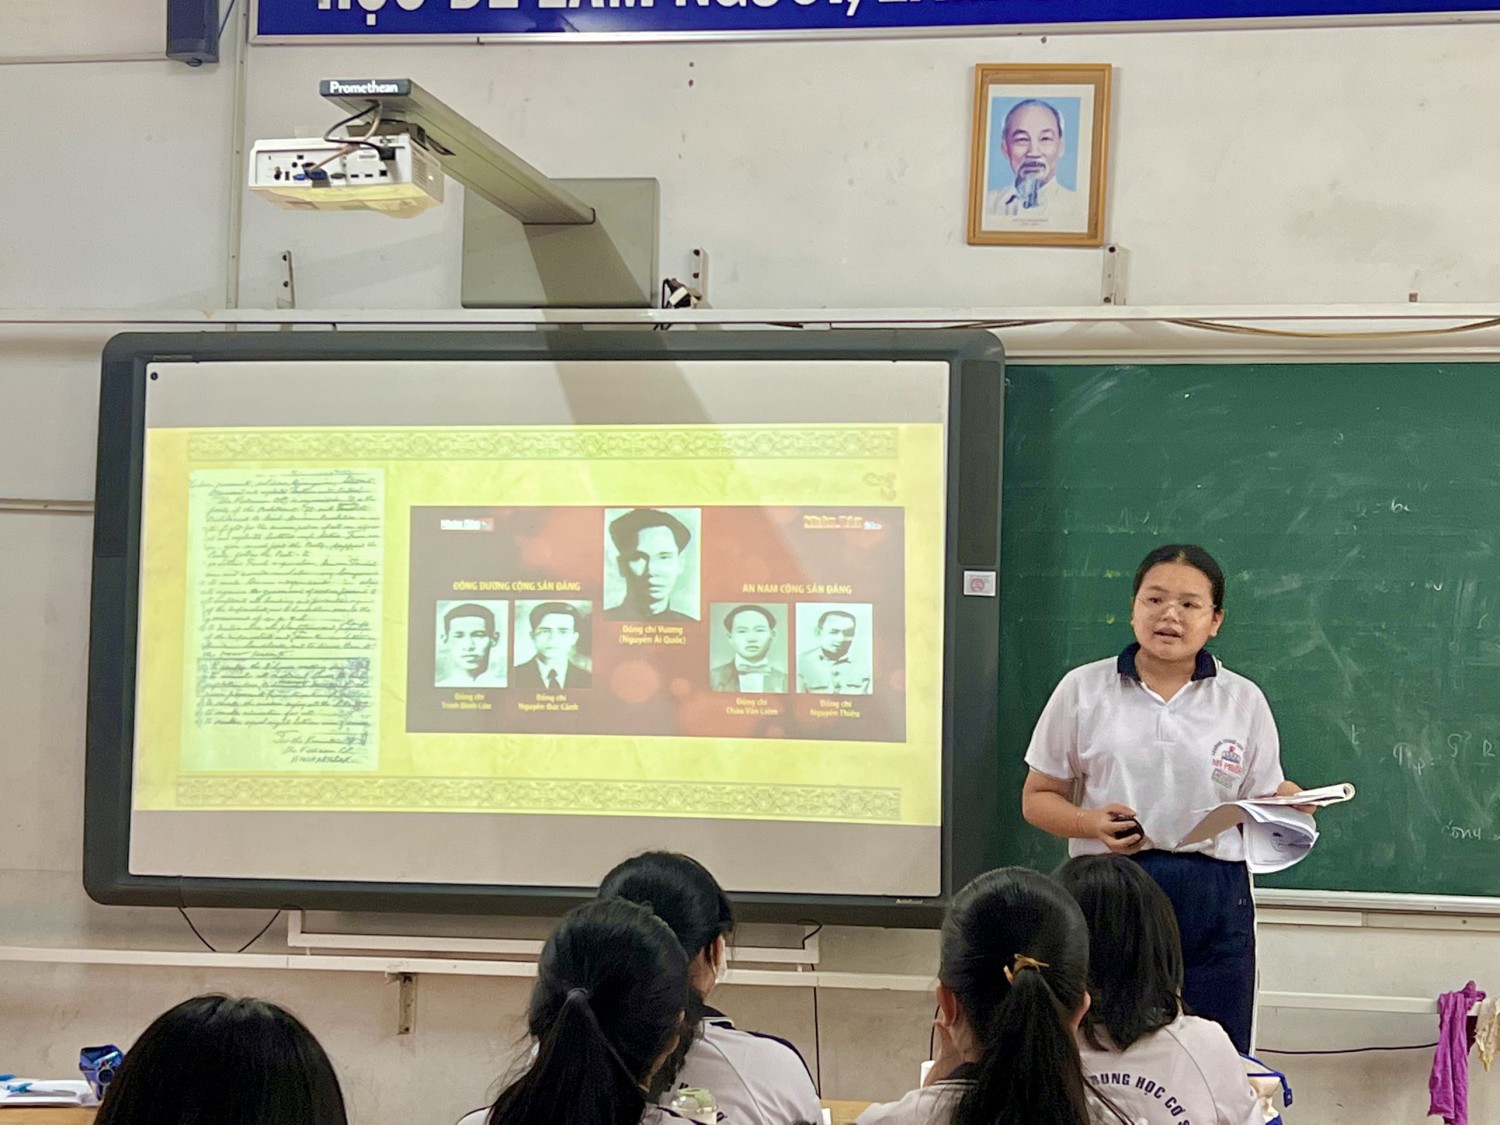 tìm hiểu lịch sử ra đời Đảng cộng sản Việt Nam thông qua giờ học môn Lịch sử (2)